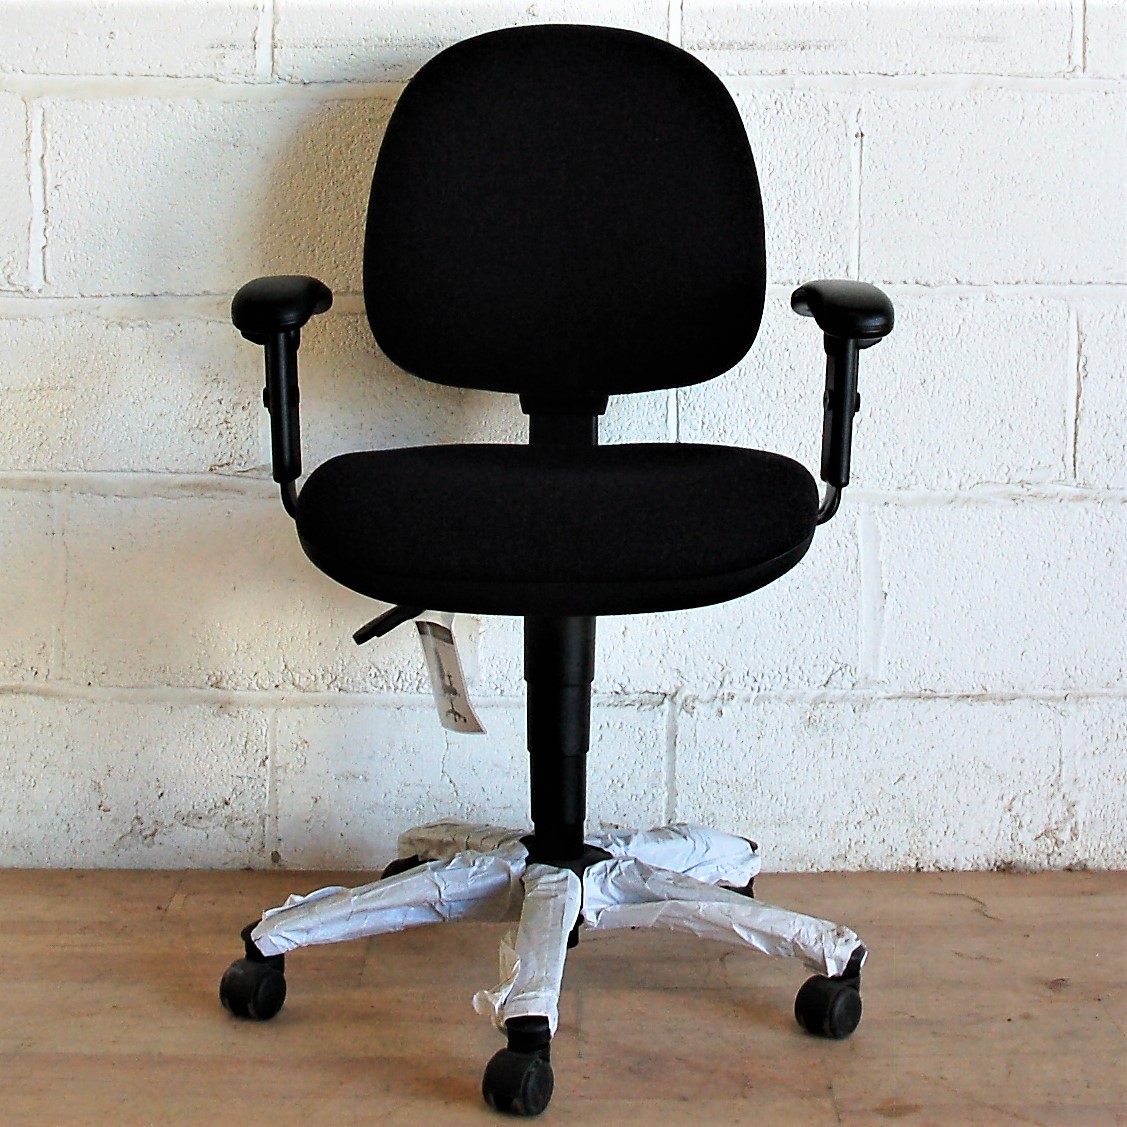 Typist Chair Charcoal Adjustable 2108 Typist Chair